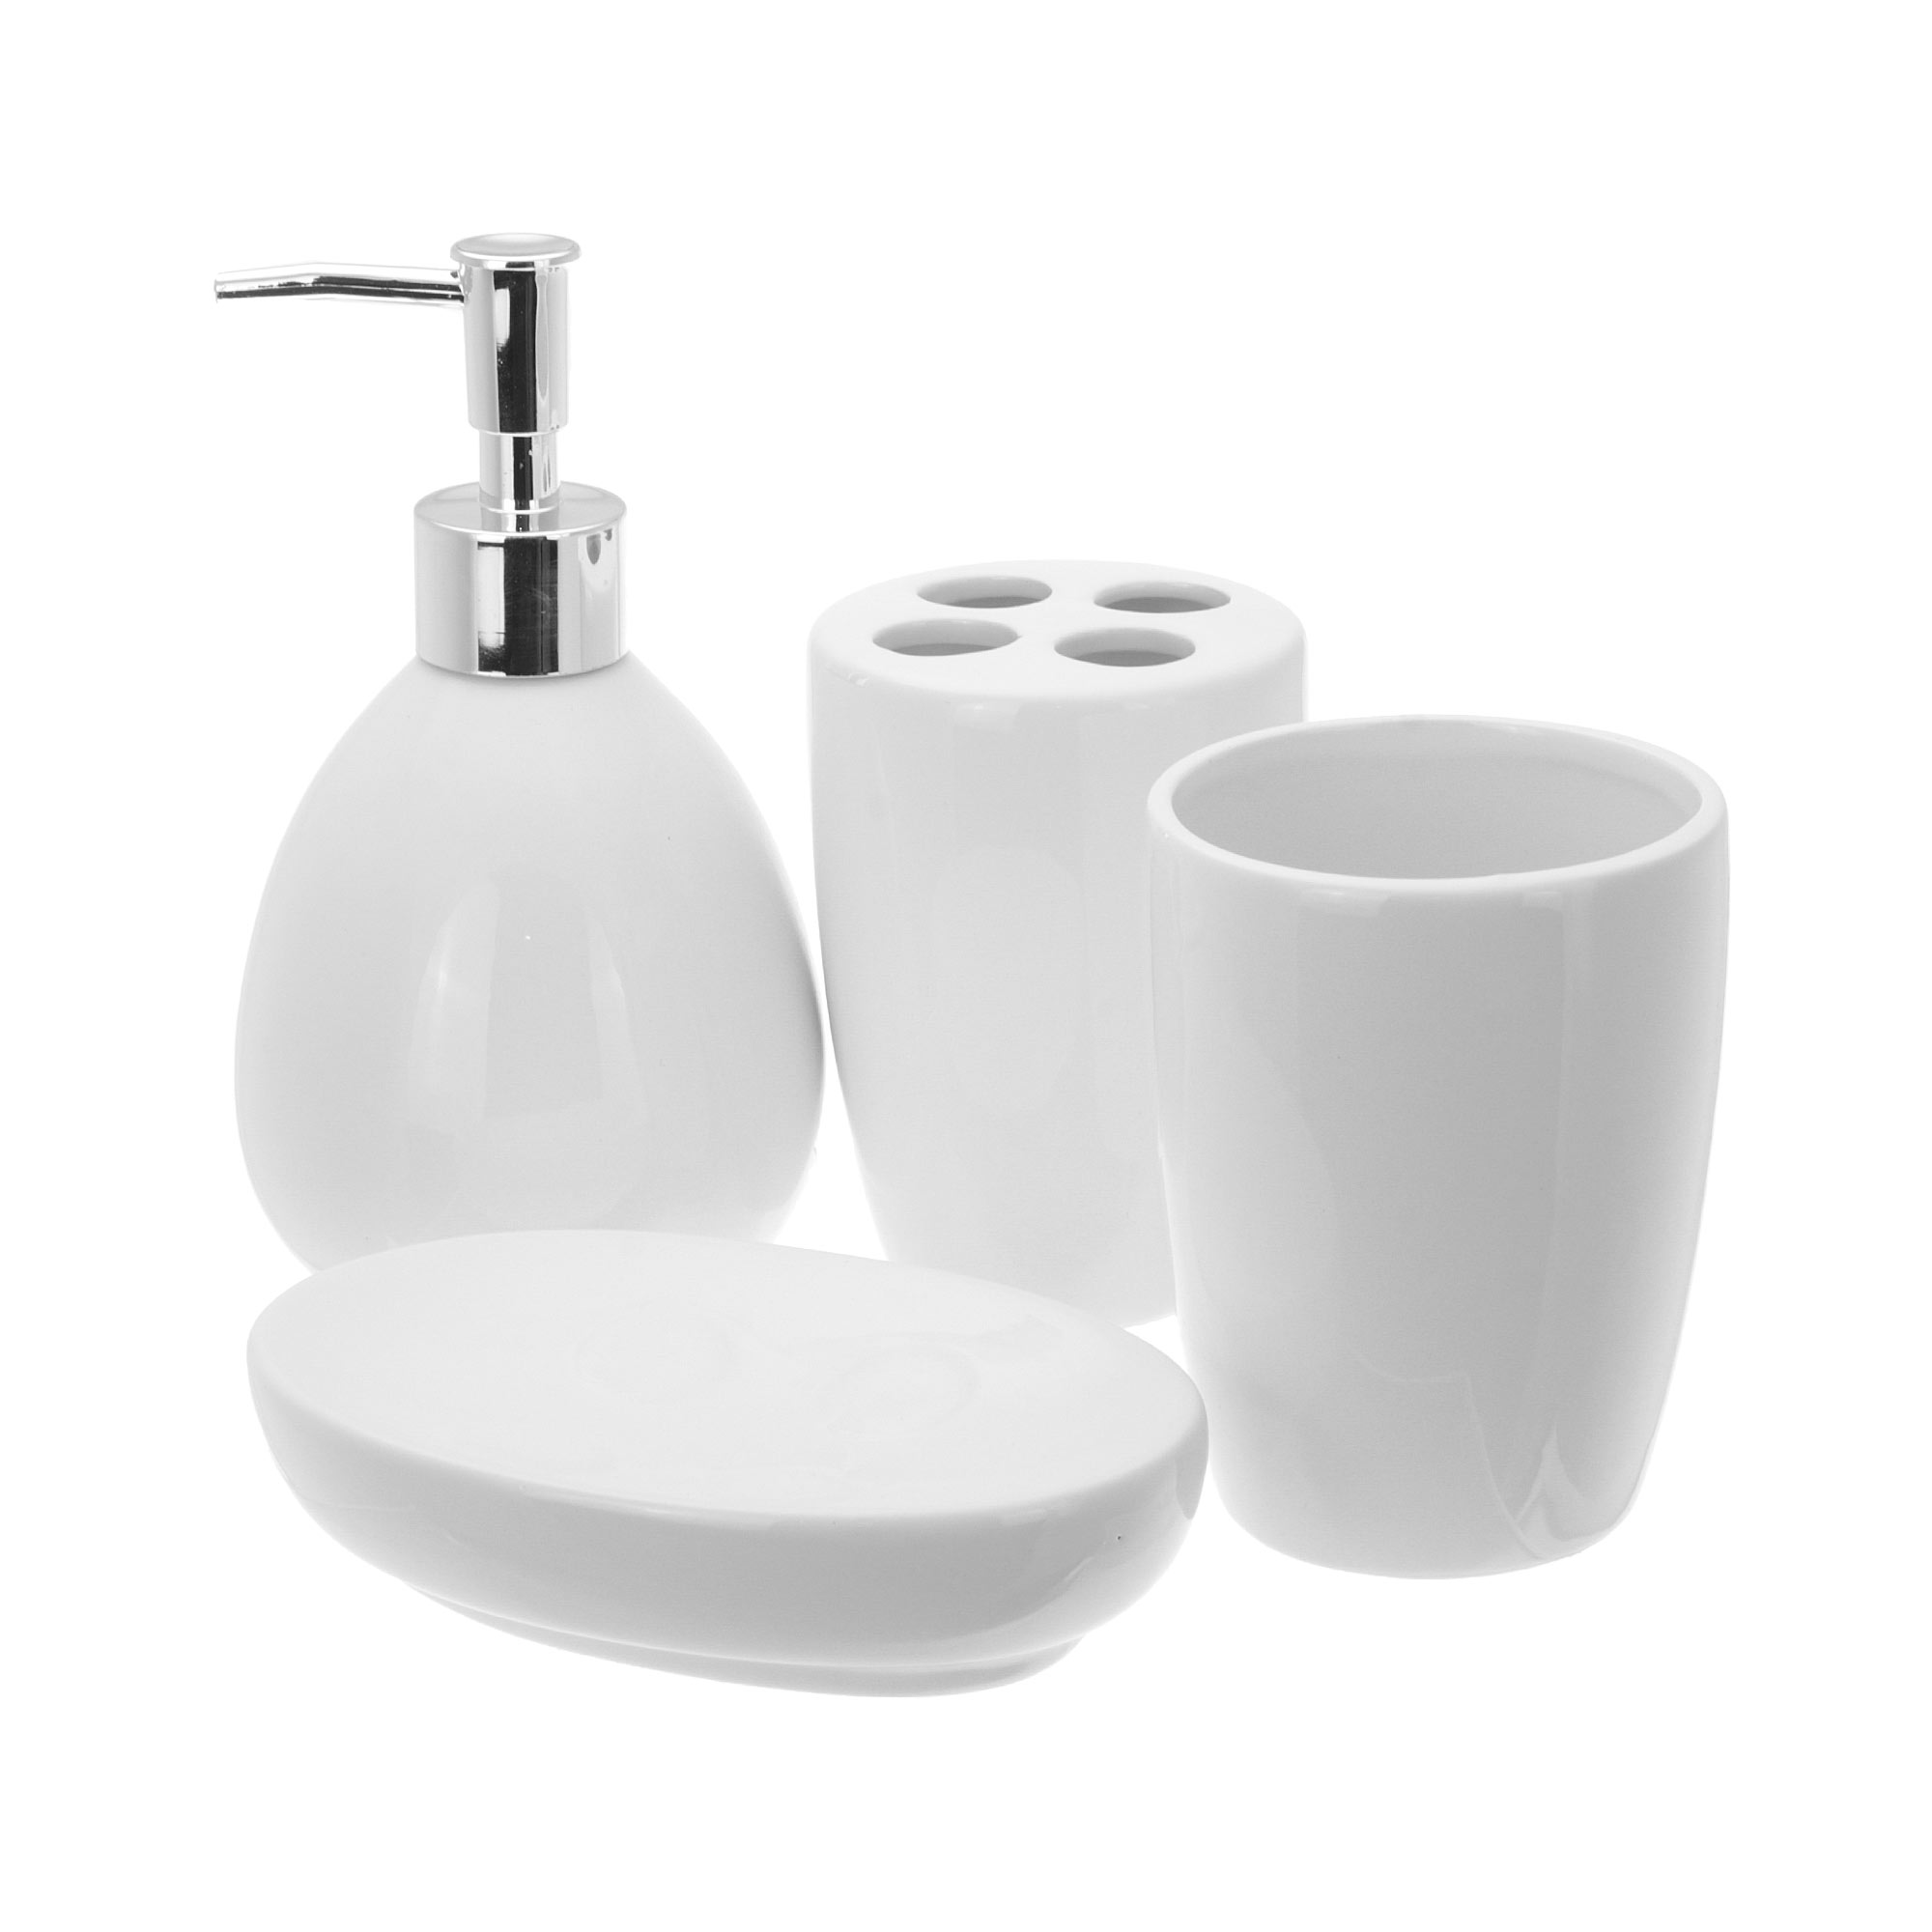 Набор аксессуаров для ванной Hengfei белый из 4 предметов (GX17G225) набор аксессуаров grohe essentials cube 5 предметов 40758001